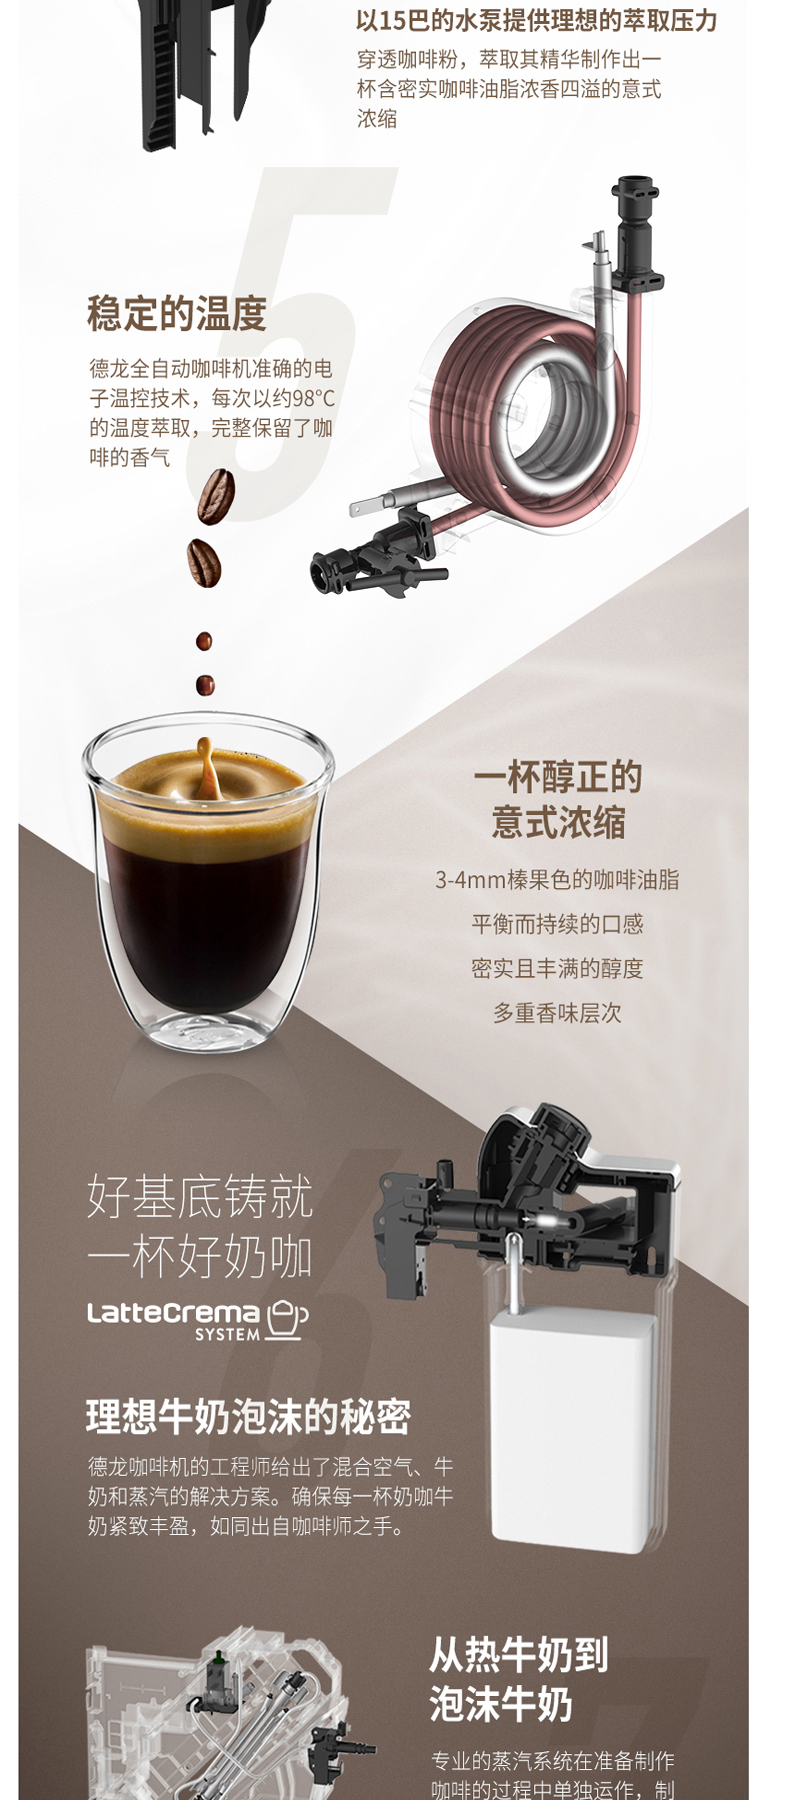 德龙 DeLonghi 全自动咖啡机 ECAM 350.75 